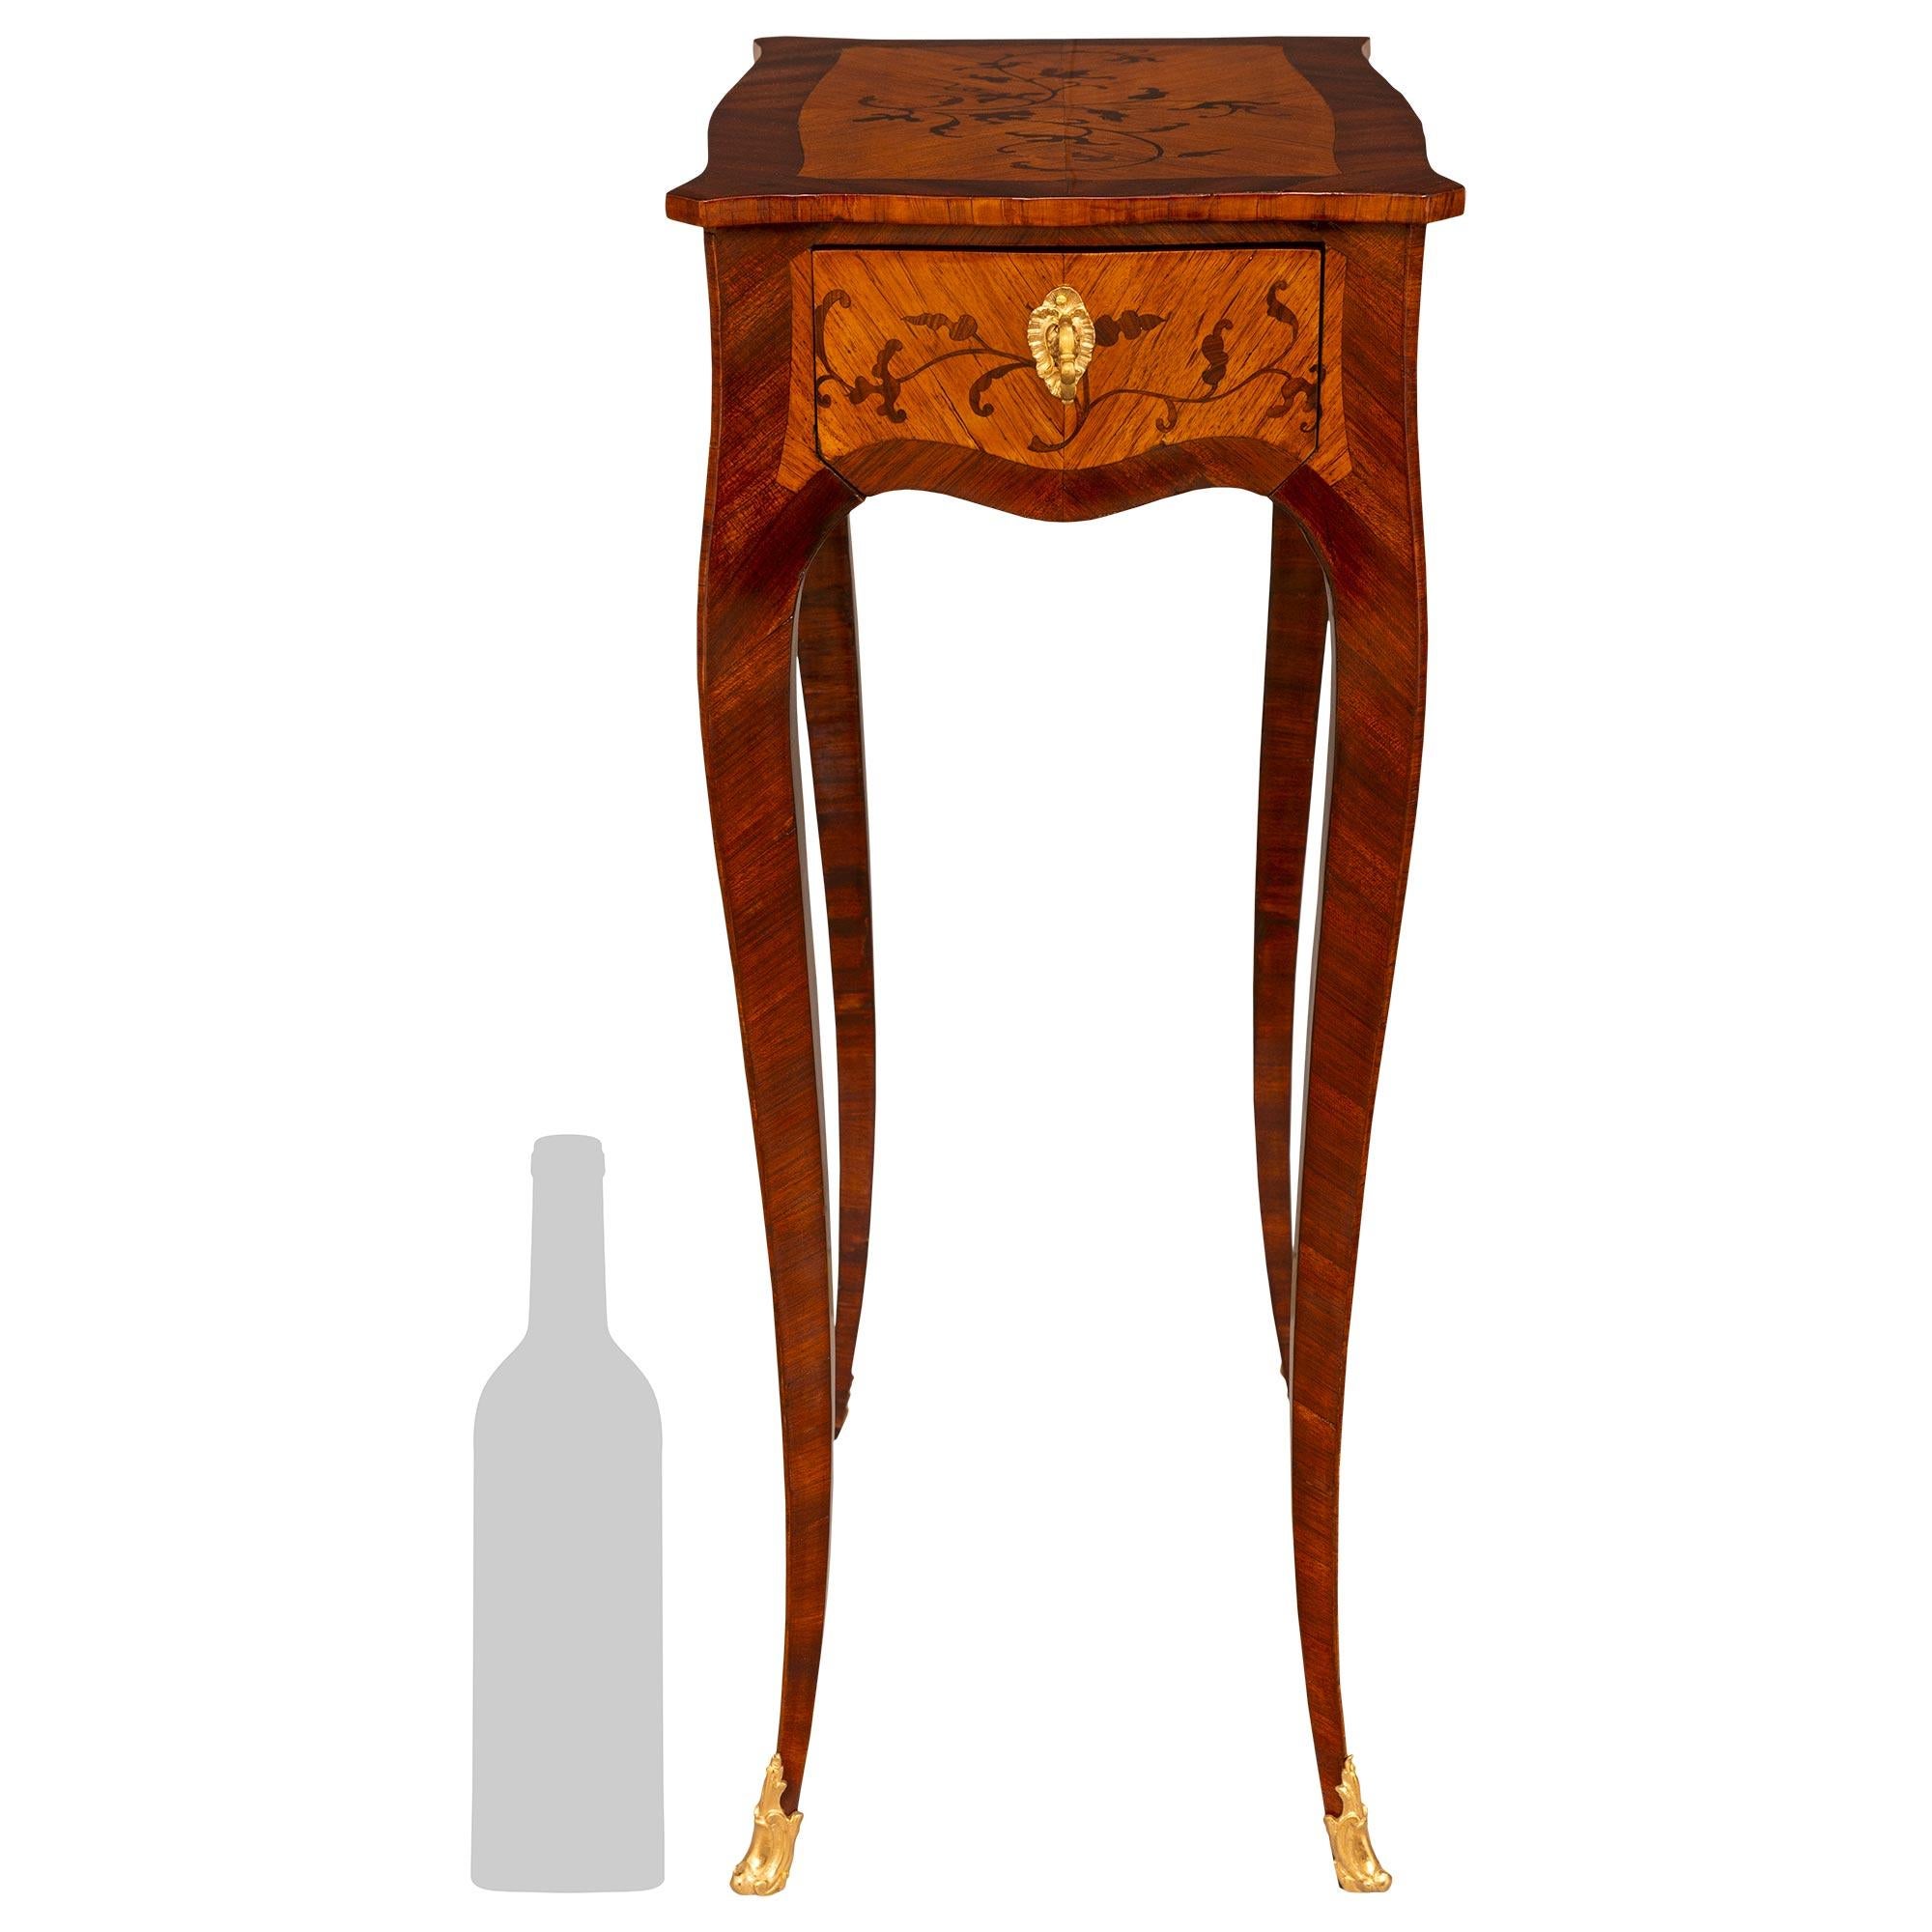 Charmante table d'appoint en bois de roi, tulipier et bronze doré de style Louis XV du XIXe siècle.